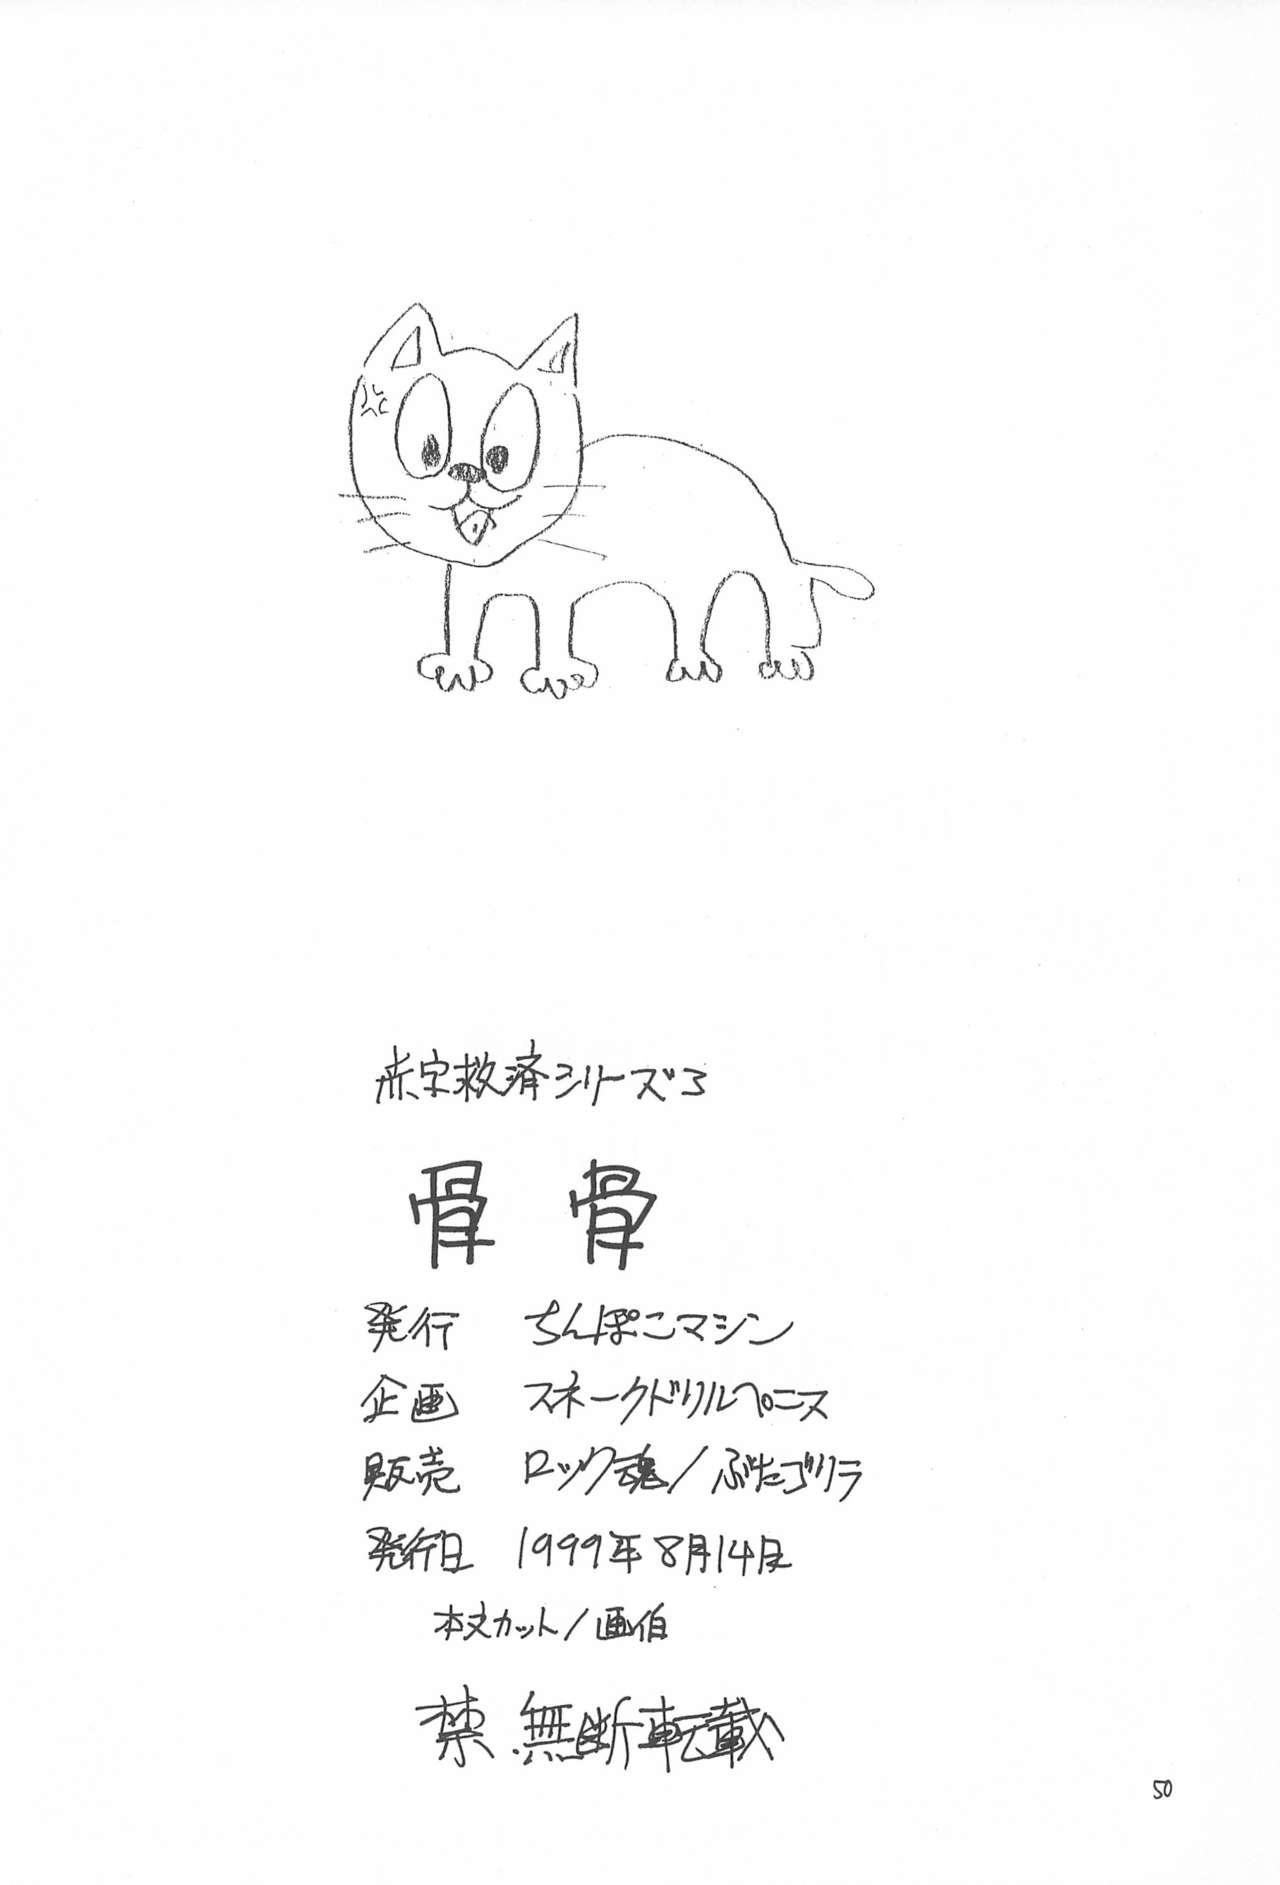 Trimmed Hone 2 - Cardcaptor sakura Ojamajo doremi Revolutionary girl utena Old Young - Page 50